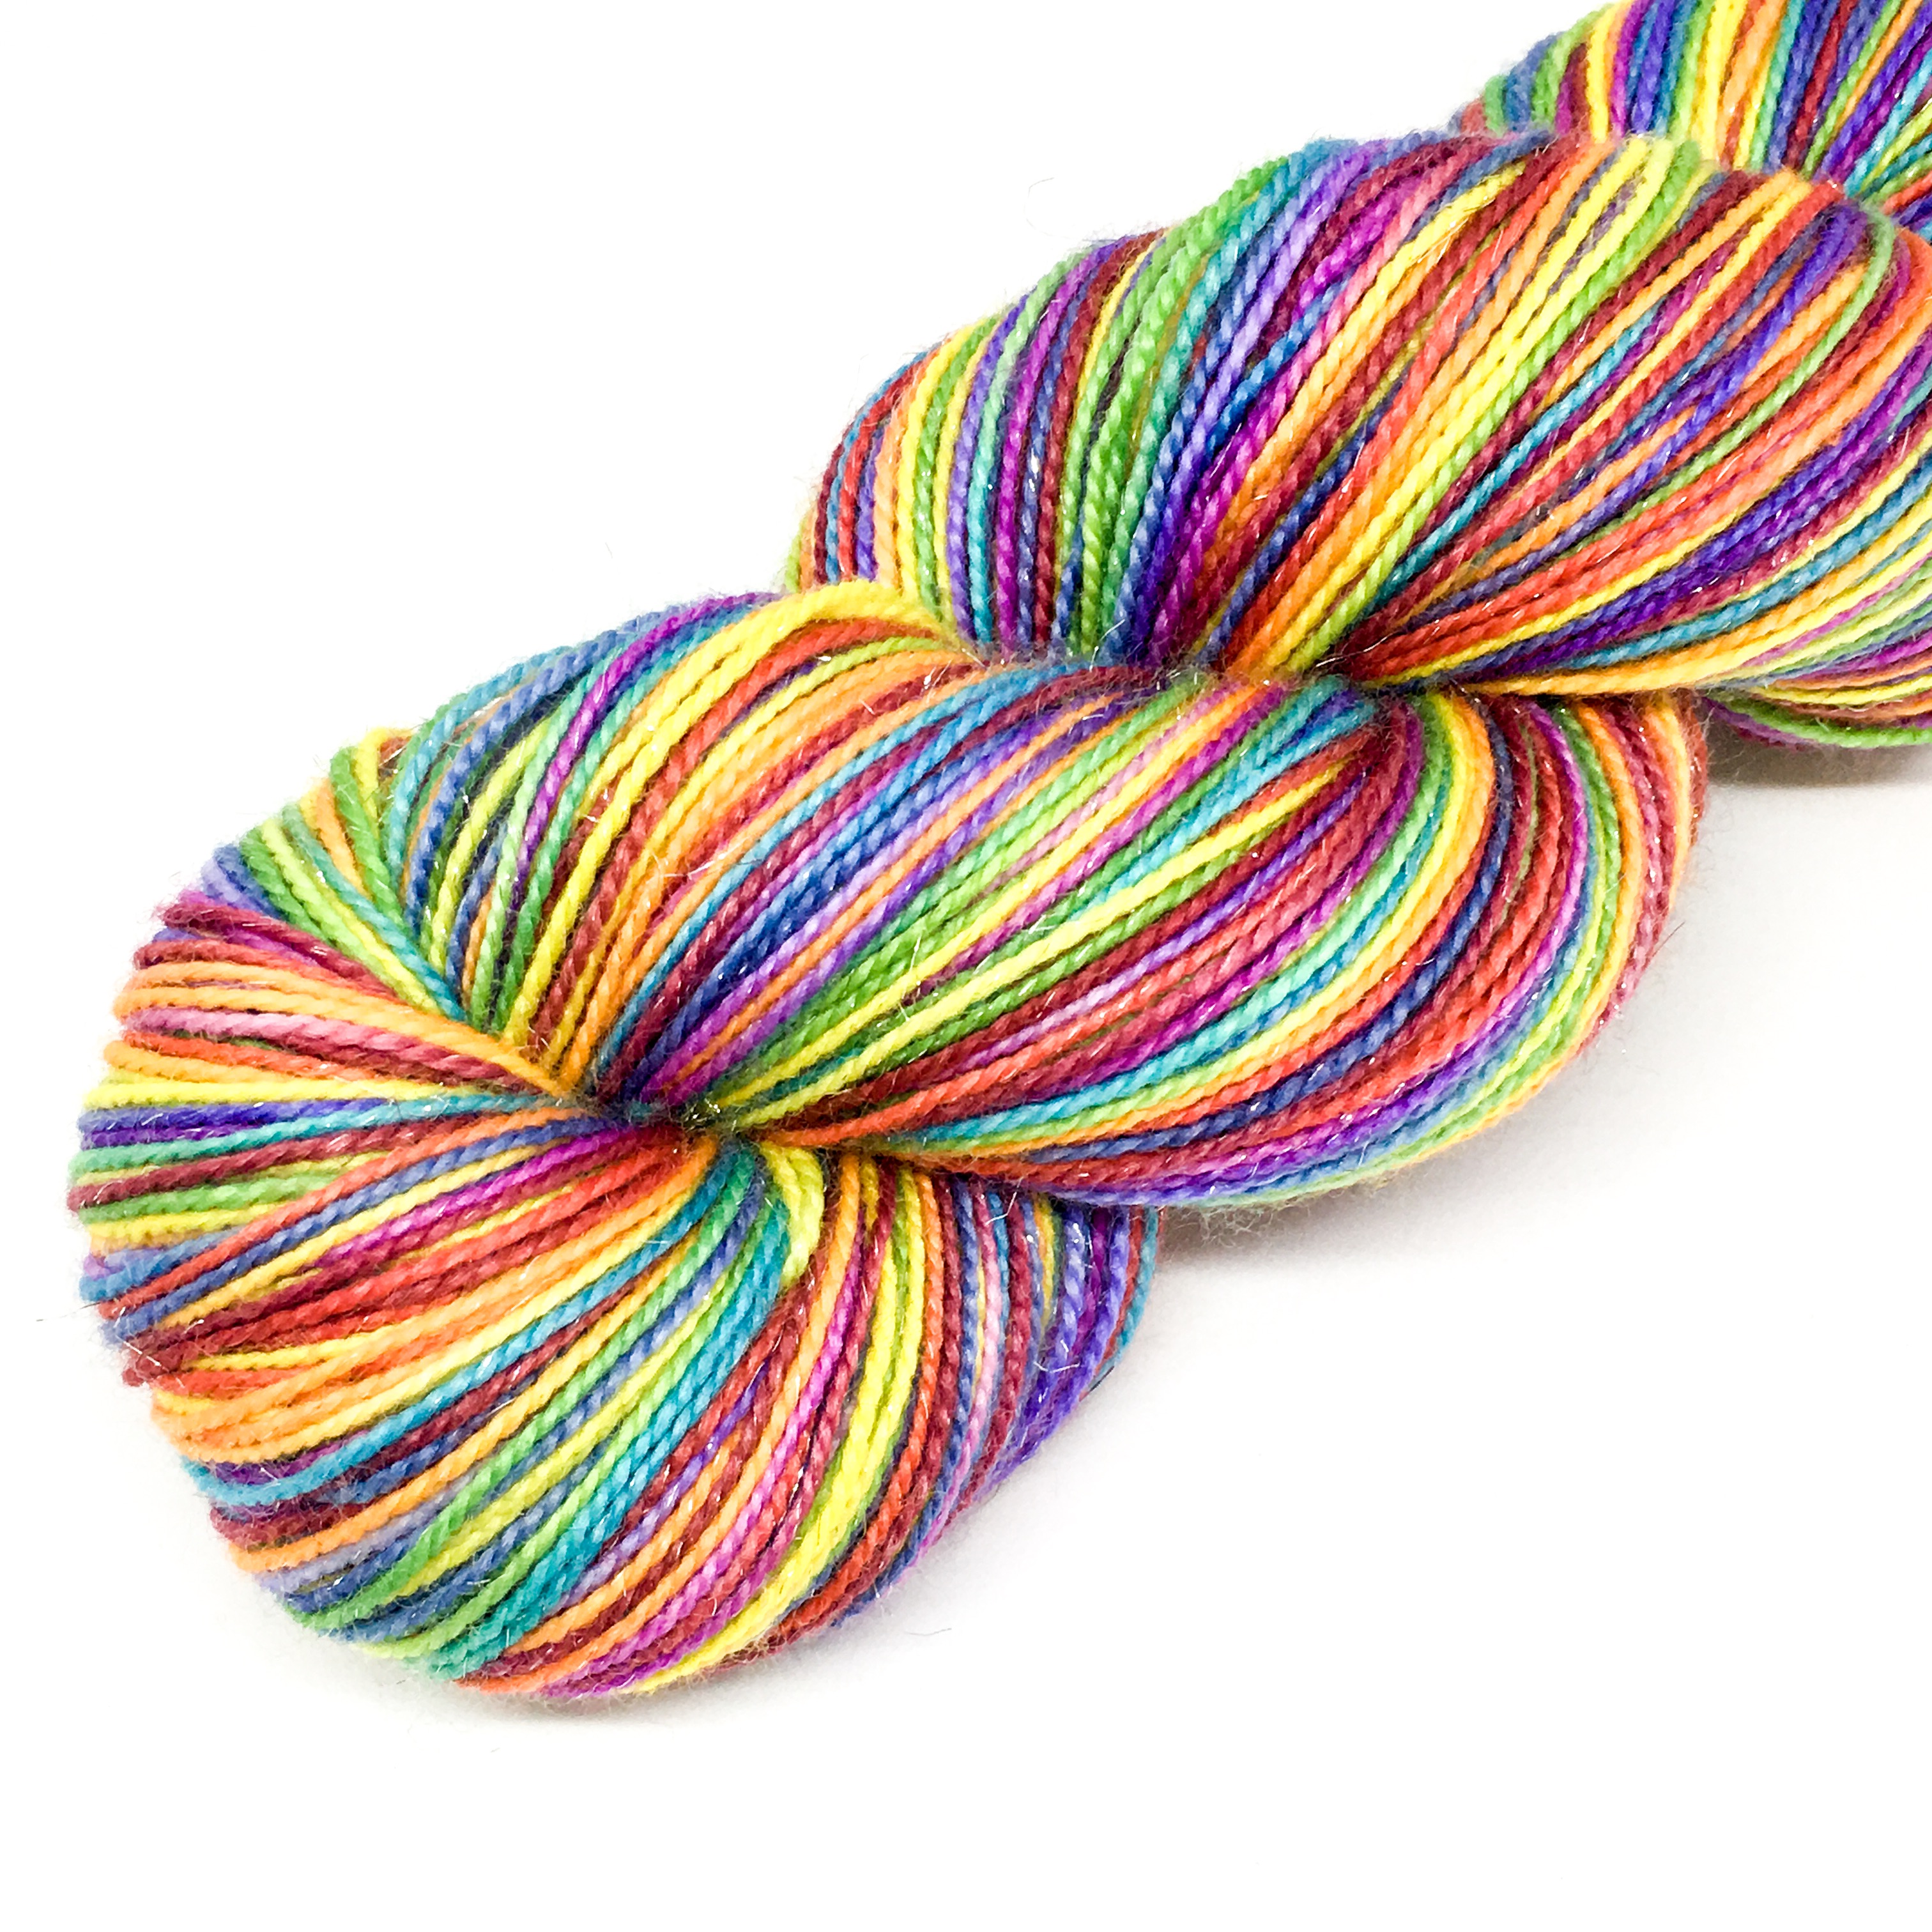 New 500g Very Beautiful Colorful Rainbow Space Dye Fancy Slub Yarn